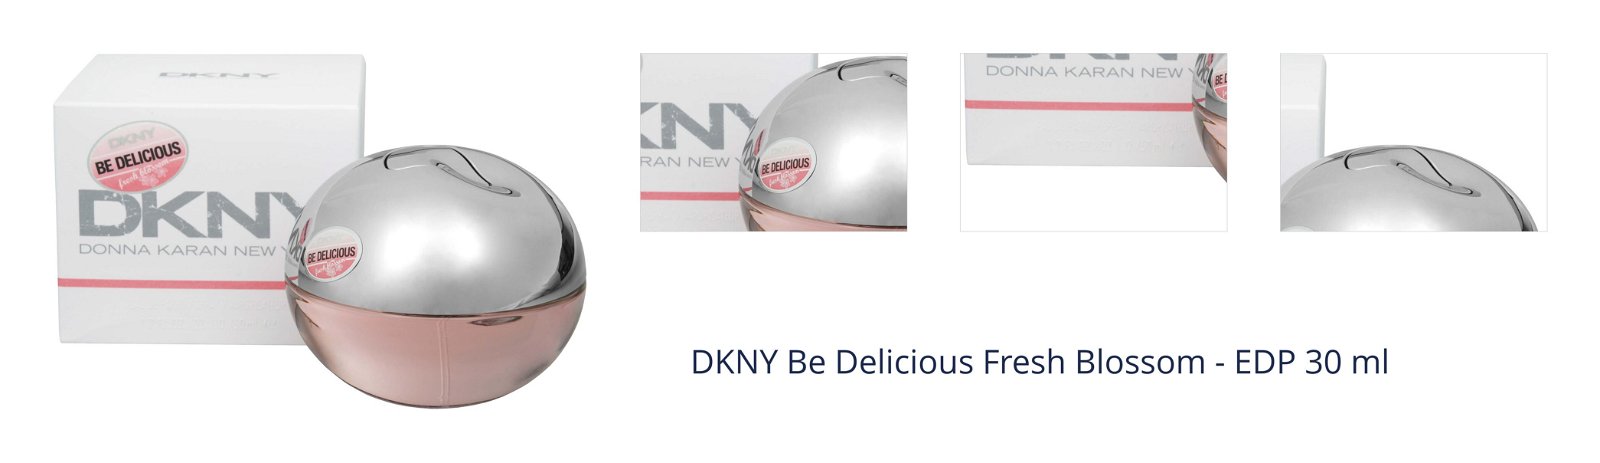 DKNY Be Delicious Fresh Blossom - EDP 30 ml 1